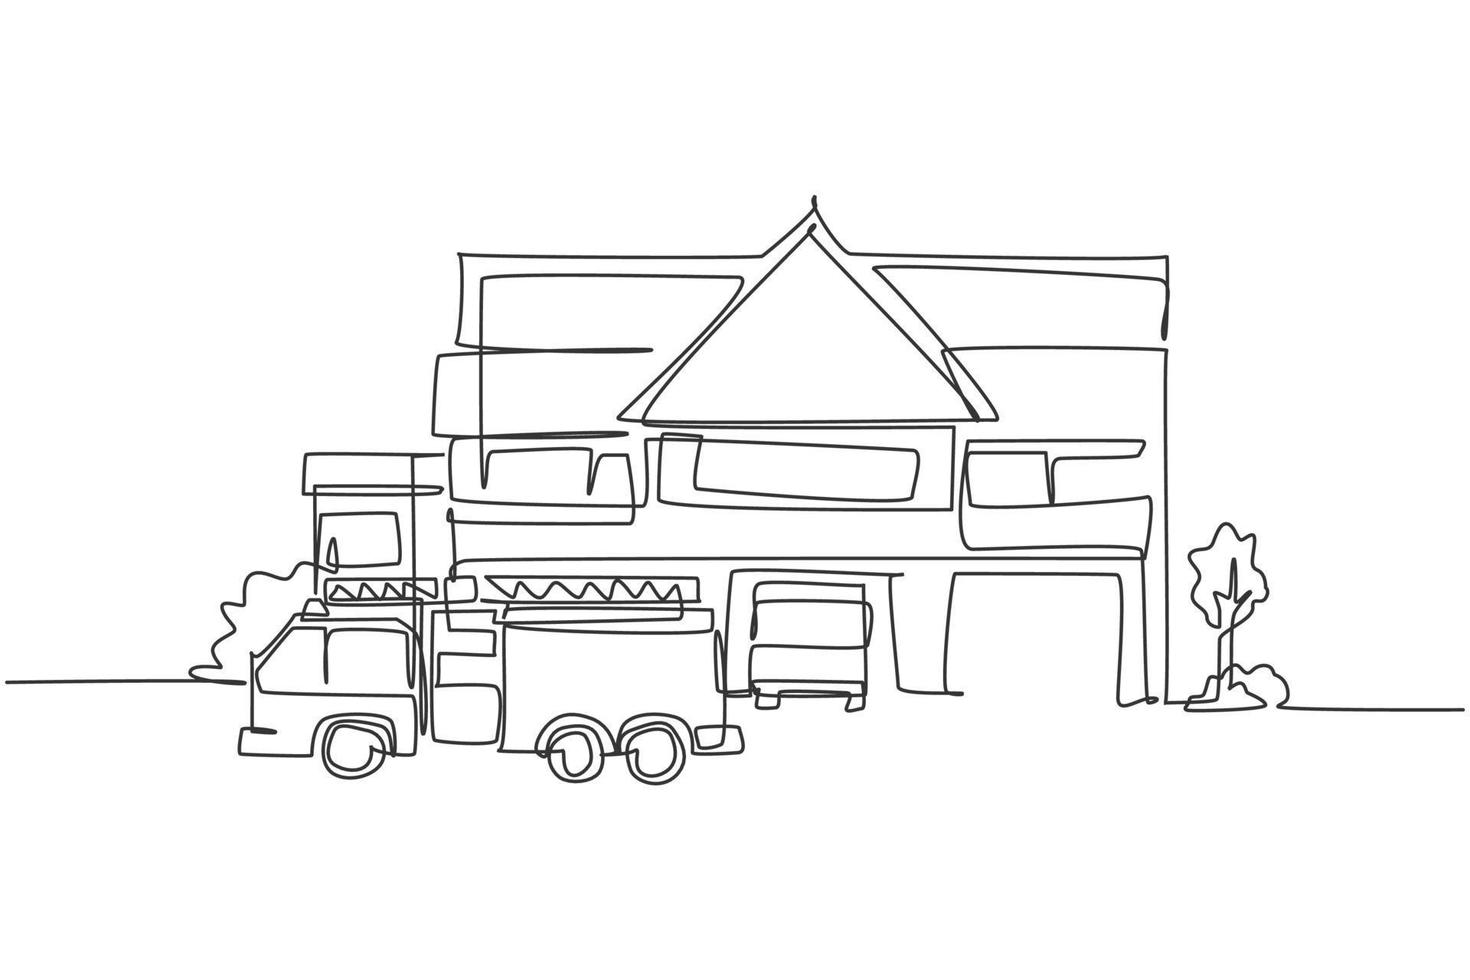 kontinuerlig enradsteckning av brandstationens byggnad med brandbil. bascamp för brandman handritad minimalistisk koncept. modern enkel linje rita design vektor grafisk illustration